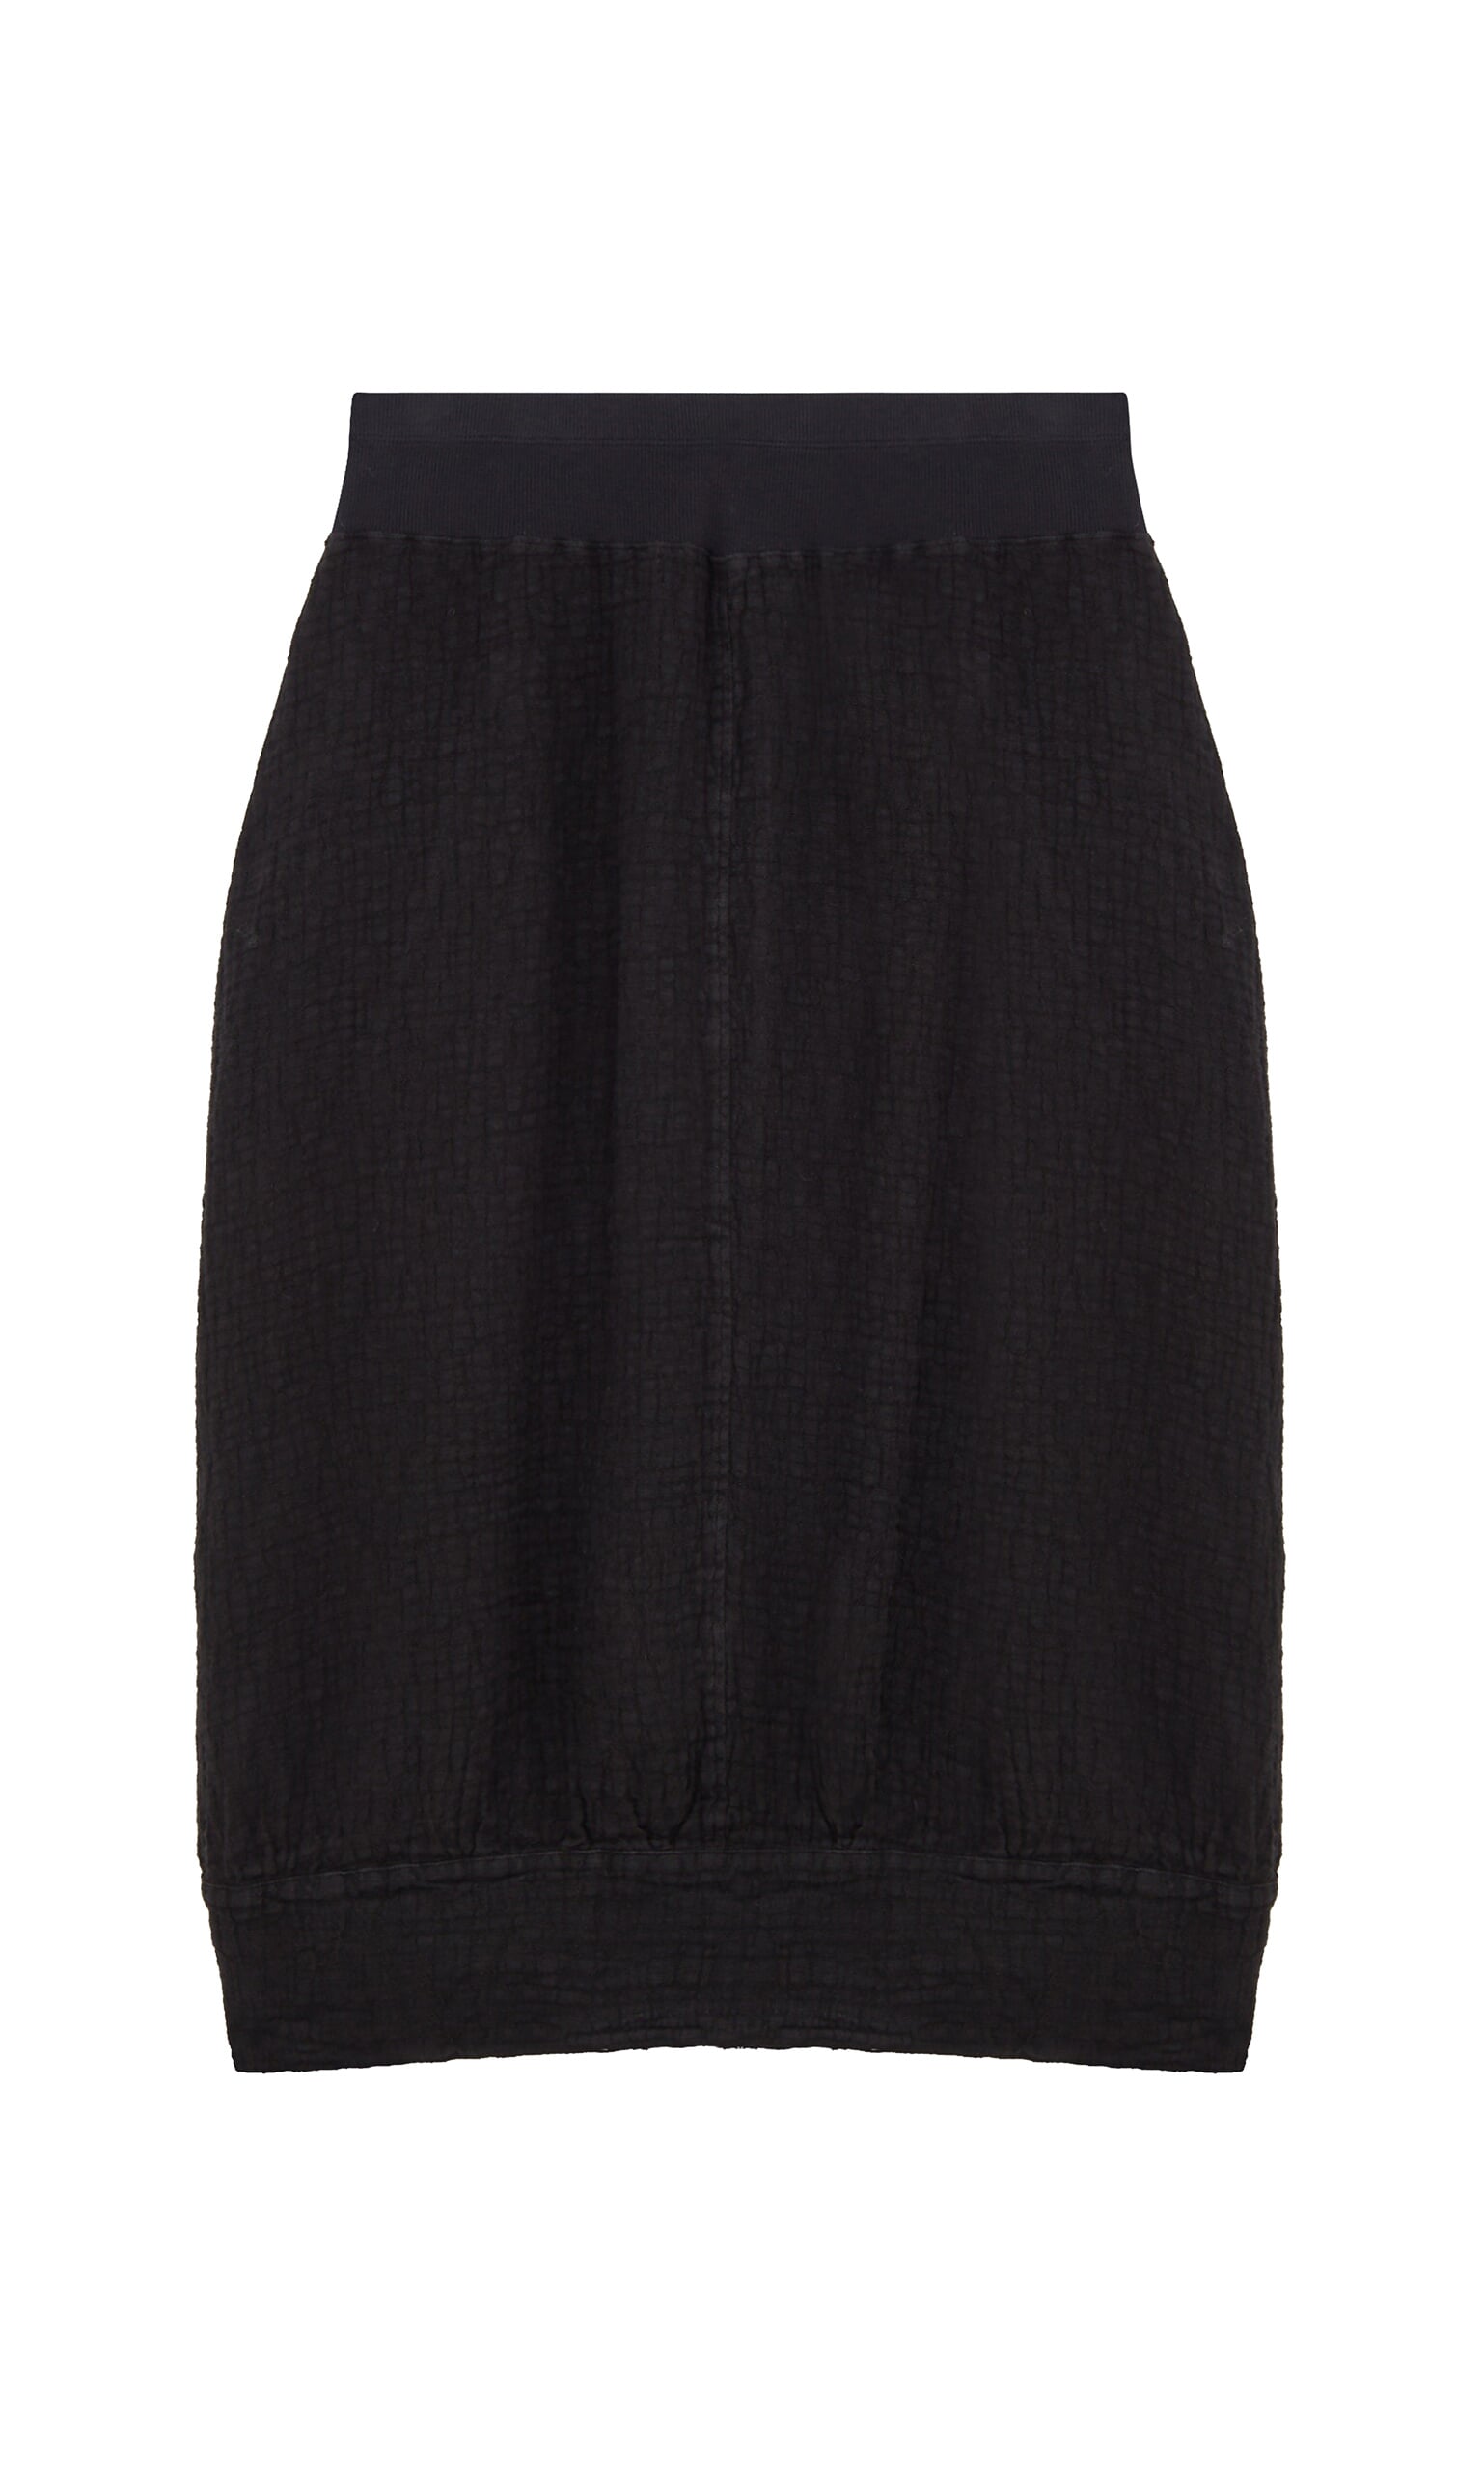 Black crinkle skirt - Plümo Ltd